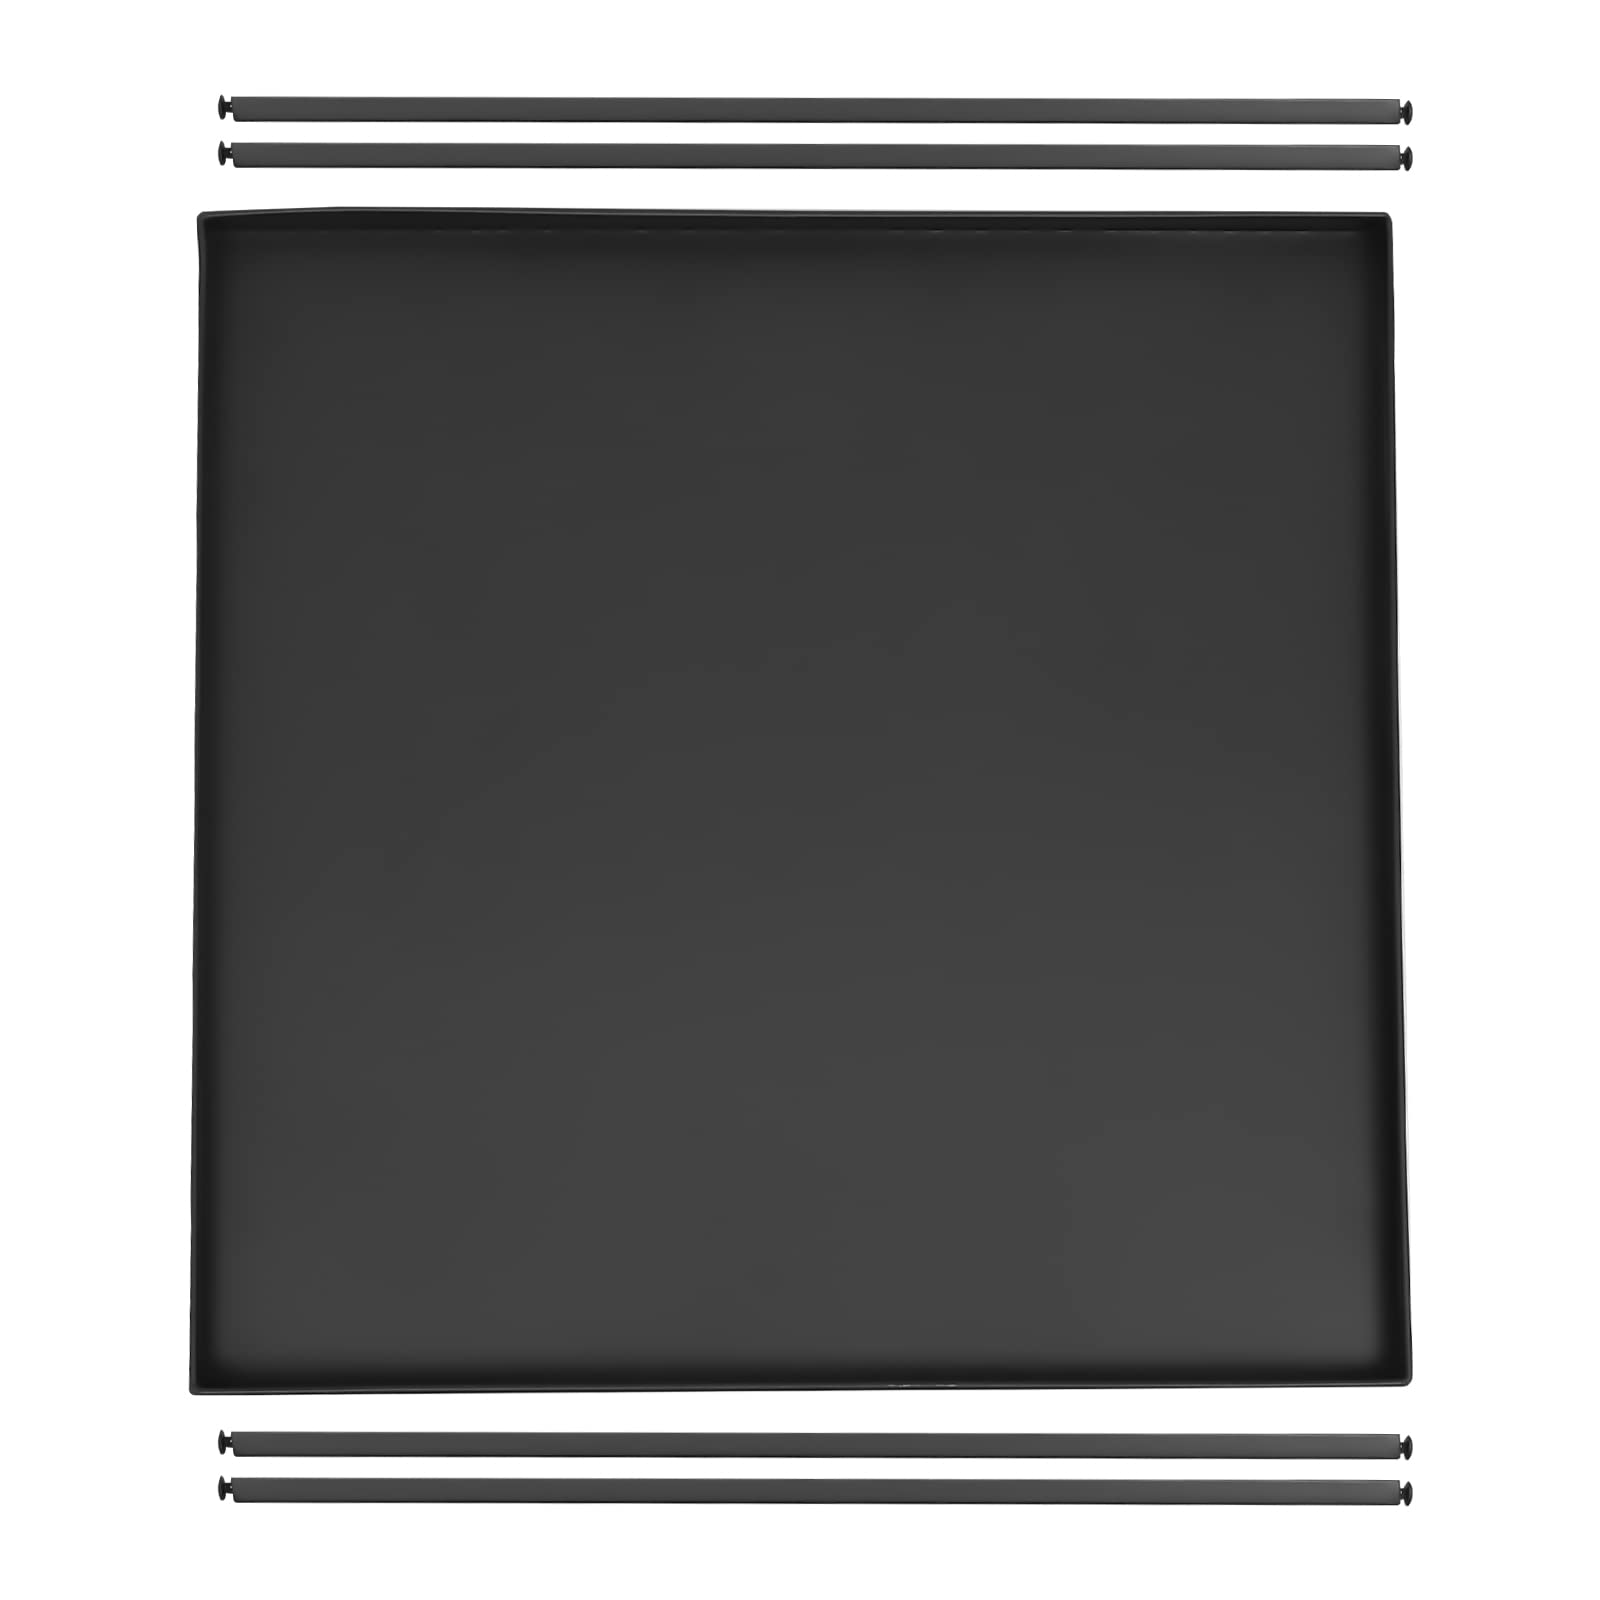 Table d'appoint carrée - Table basse mobile - Cadre en acier - Imperméable - Anti-rayures - Noir - Pour salon, chambre à coucher